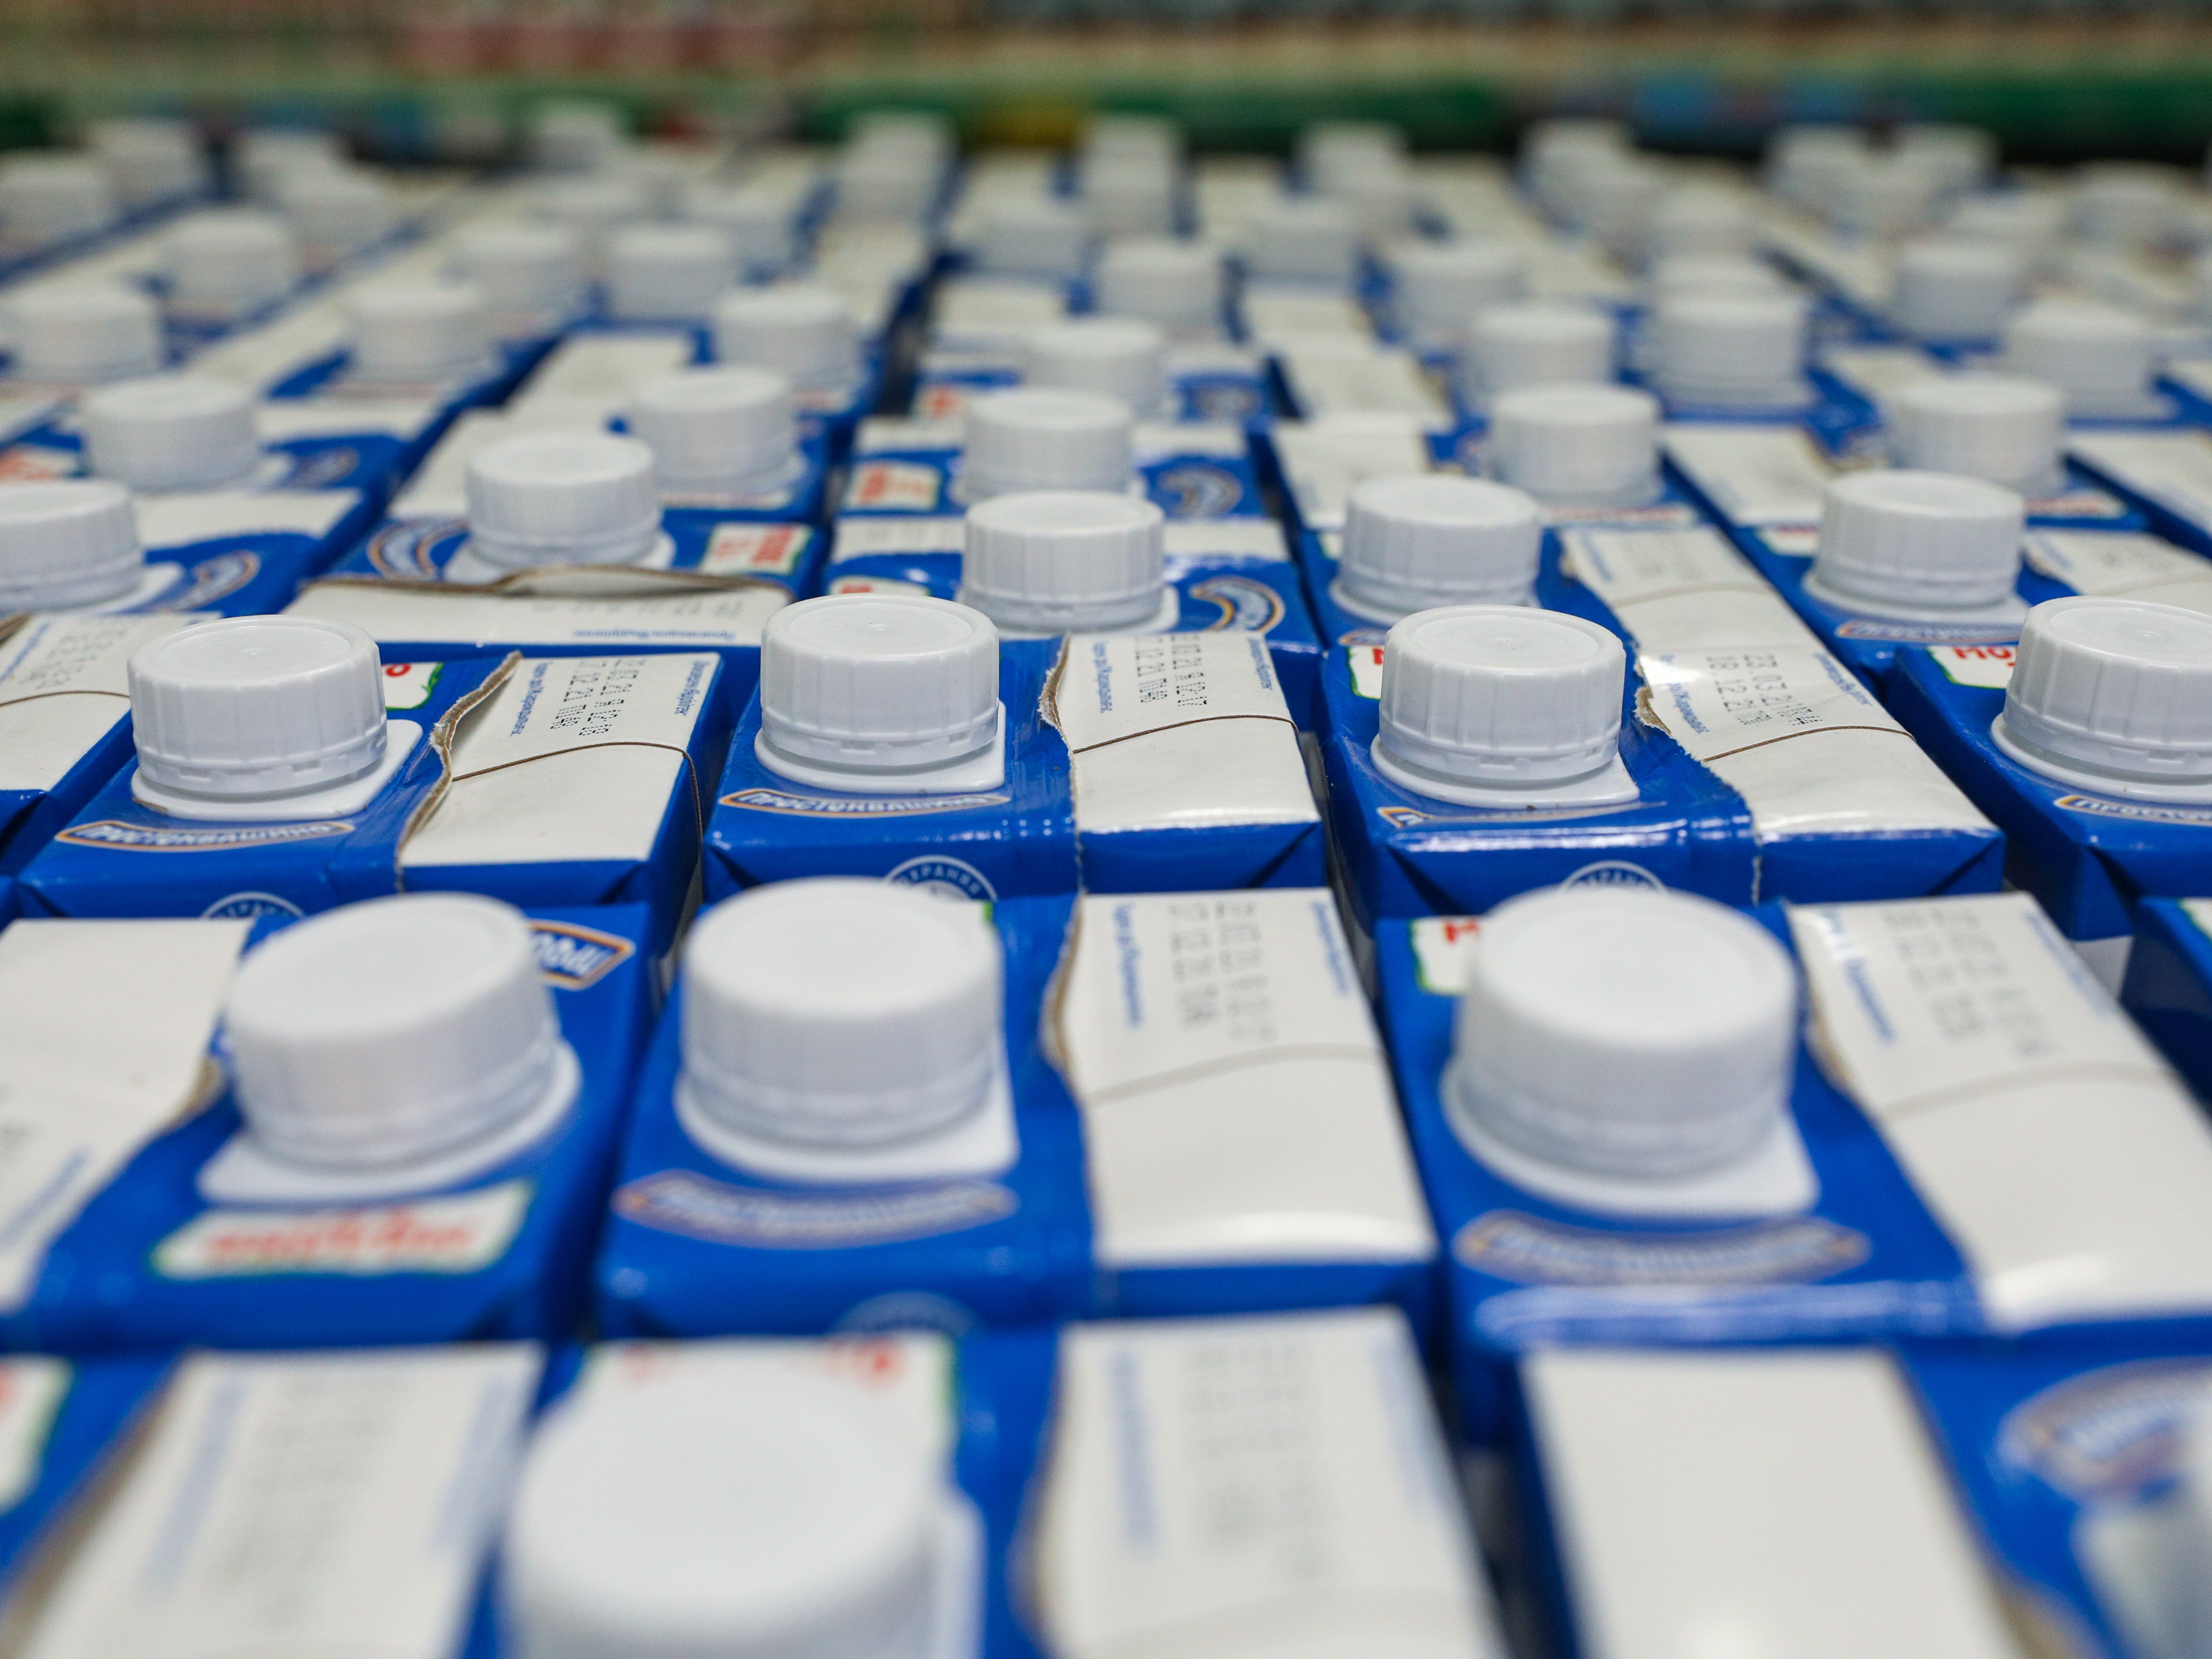 Производители молочной продукции просят собирать данные о производстве и поставках картона